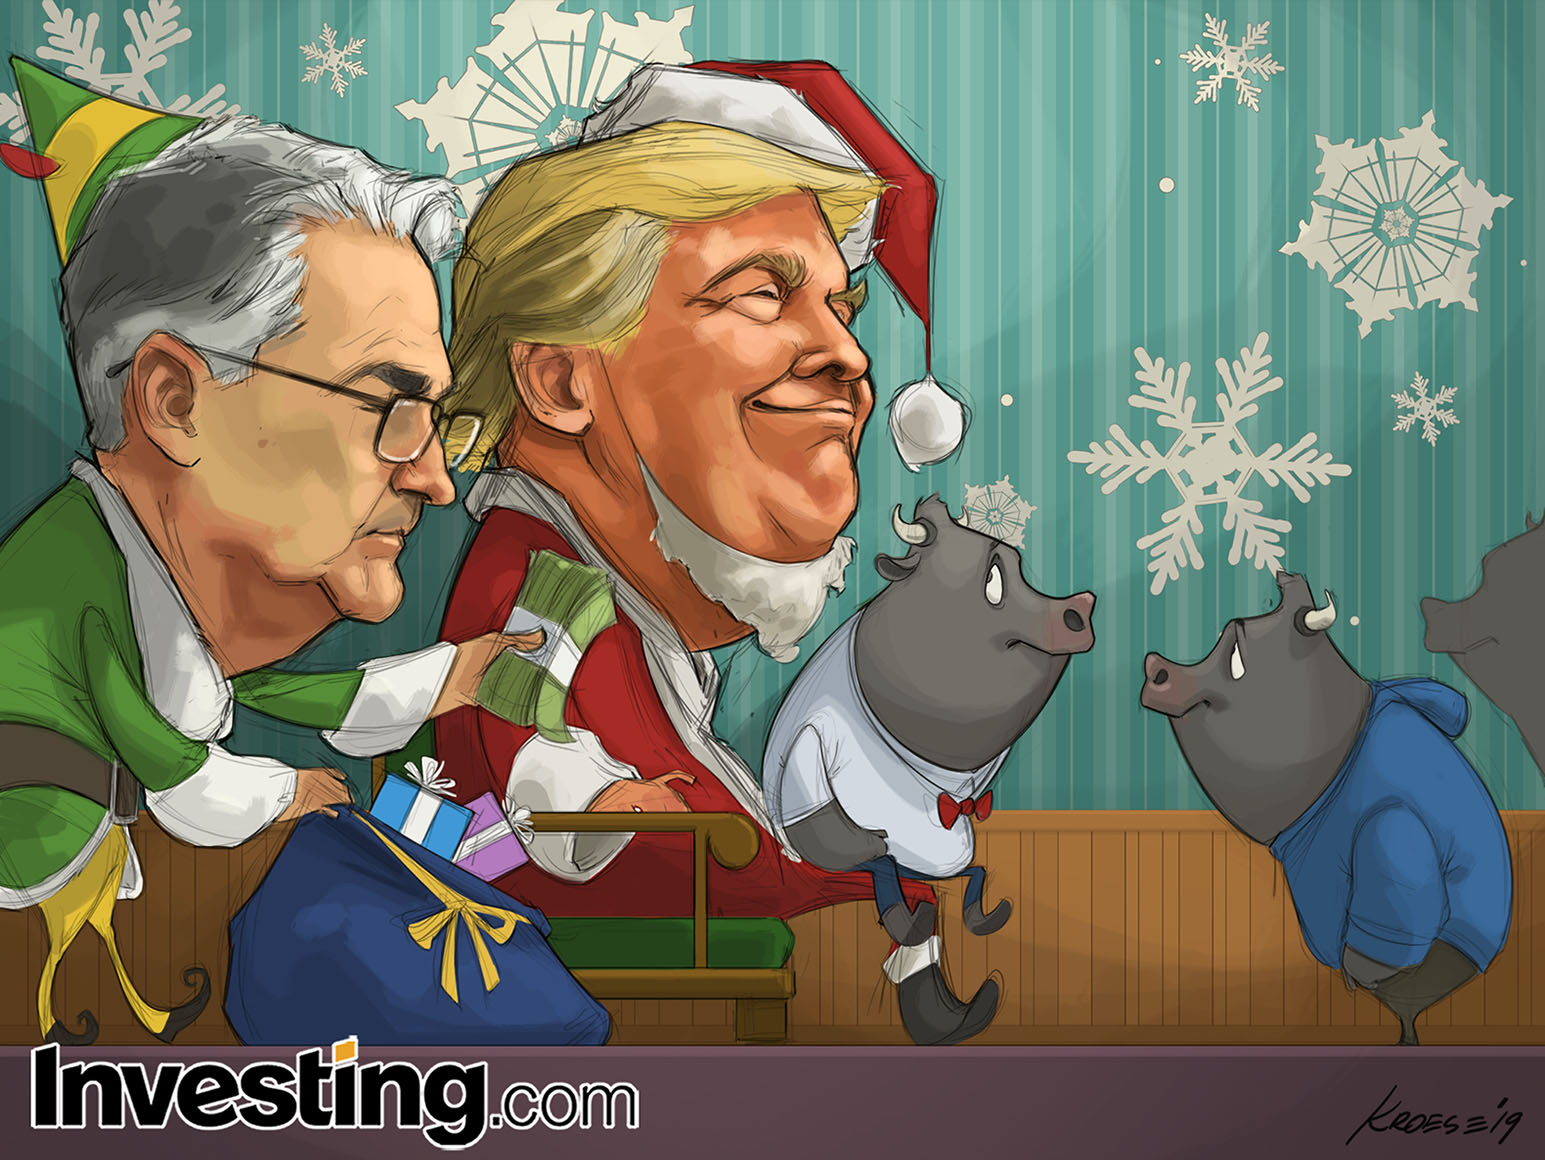 Investing.com wenst u prettige kerstdagen en een gelukkig nieuwjaar